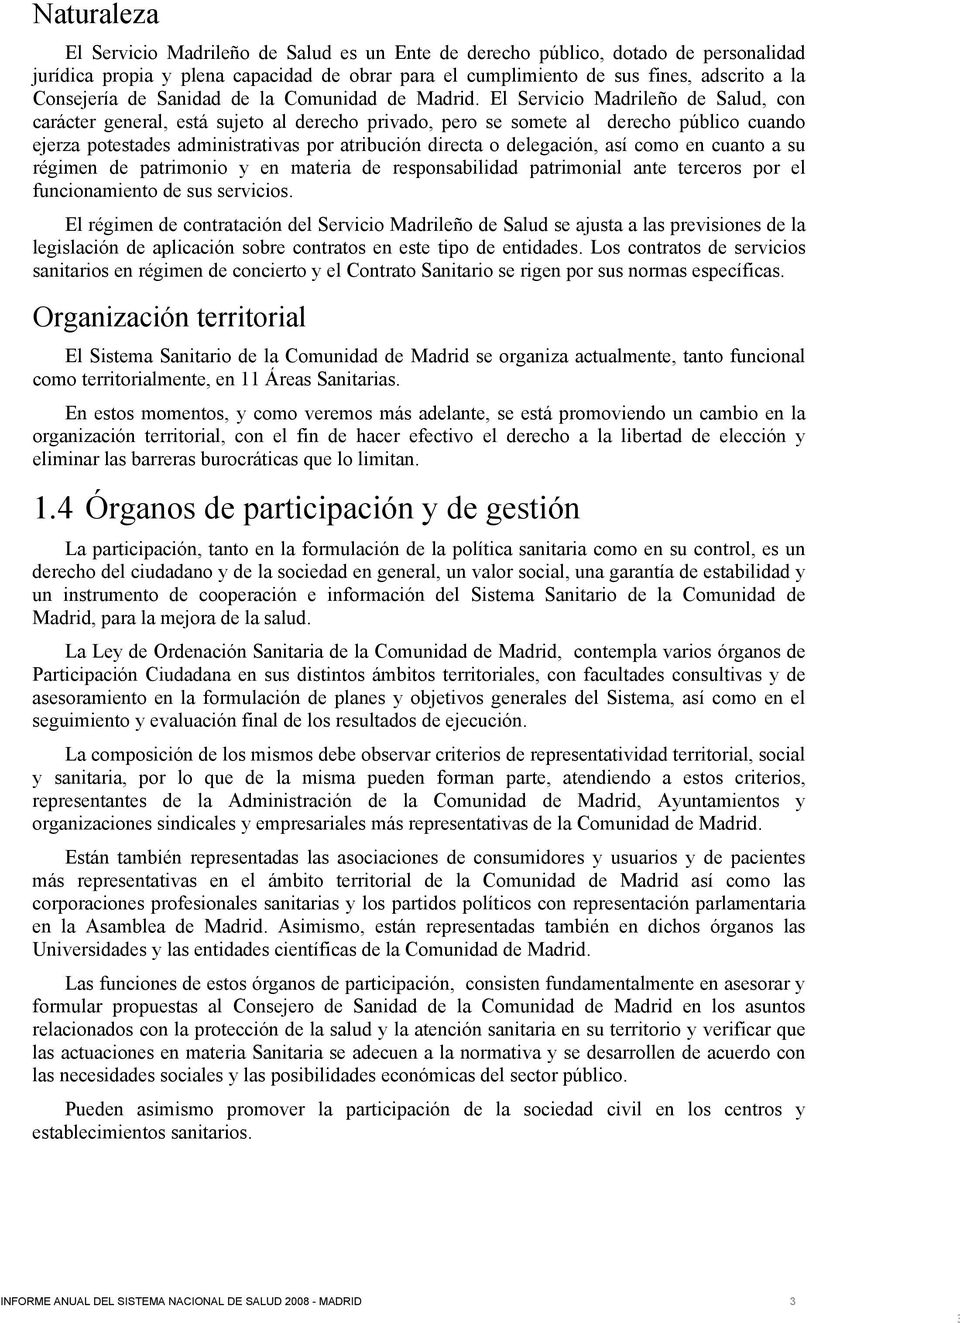 El Servicio Madrileño de Salud, con carácter general, está sujeto al derecho privado, pero se somete al derecho público cuando ejerza potestades administrativas por atribución directa o delegación,